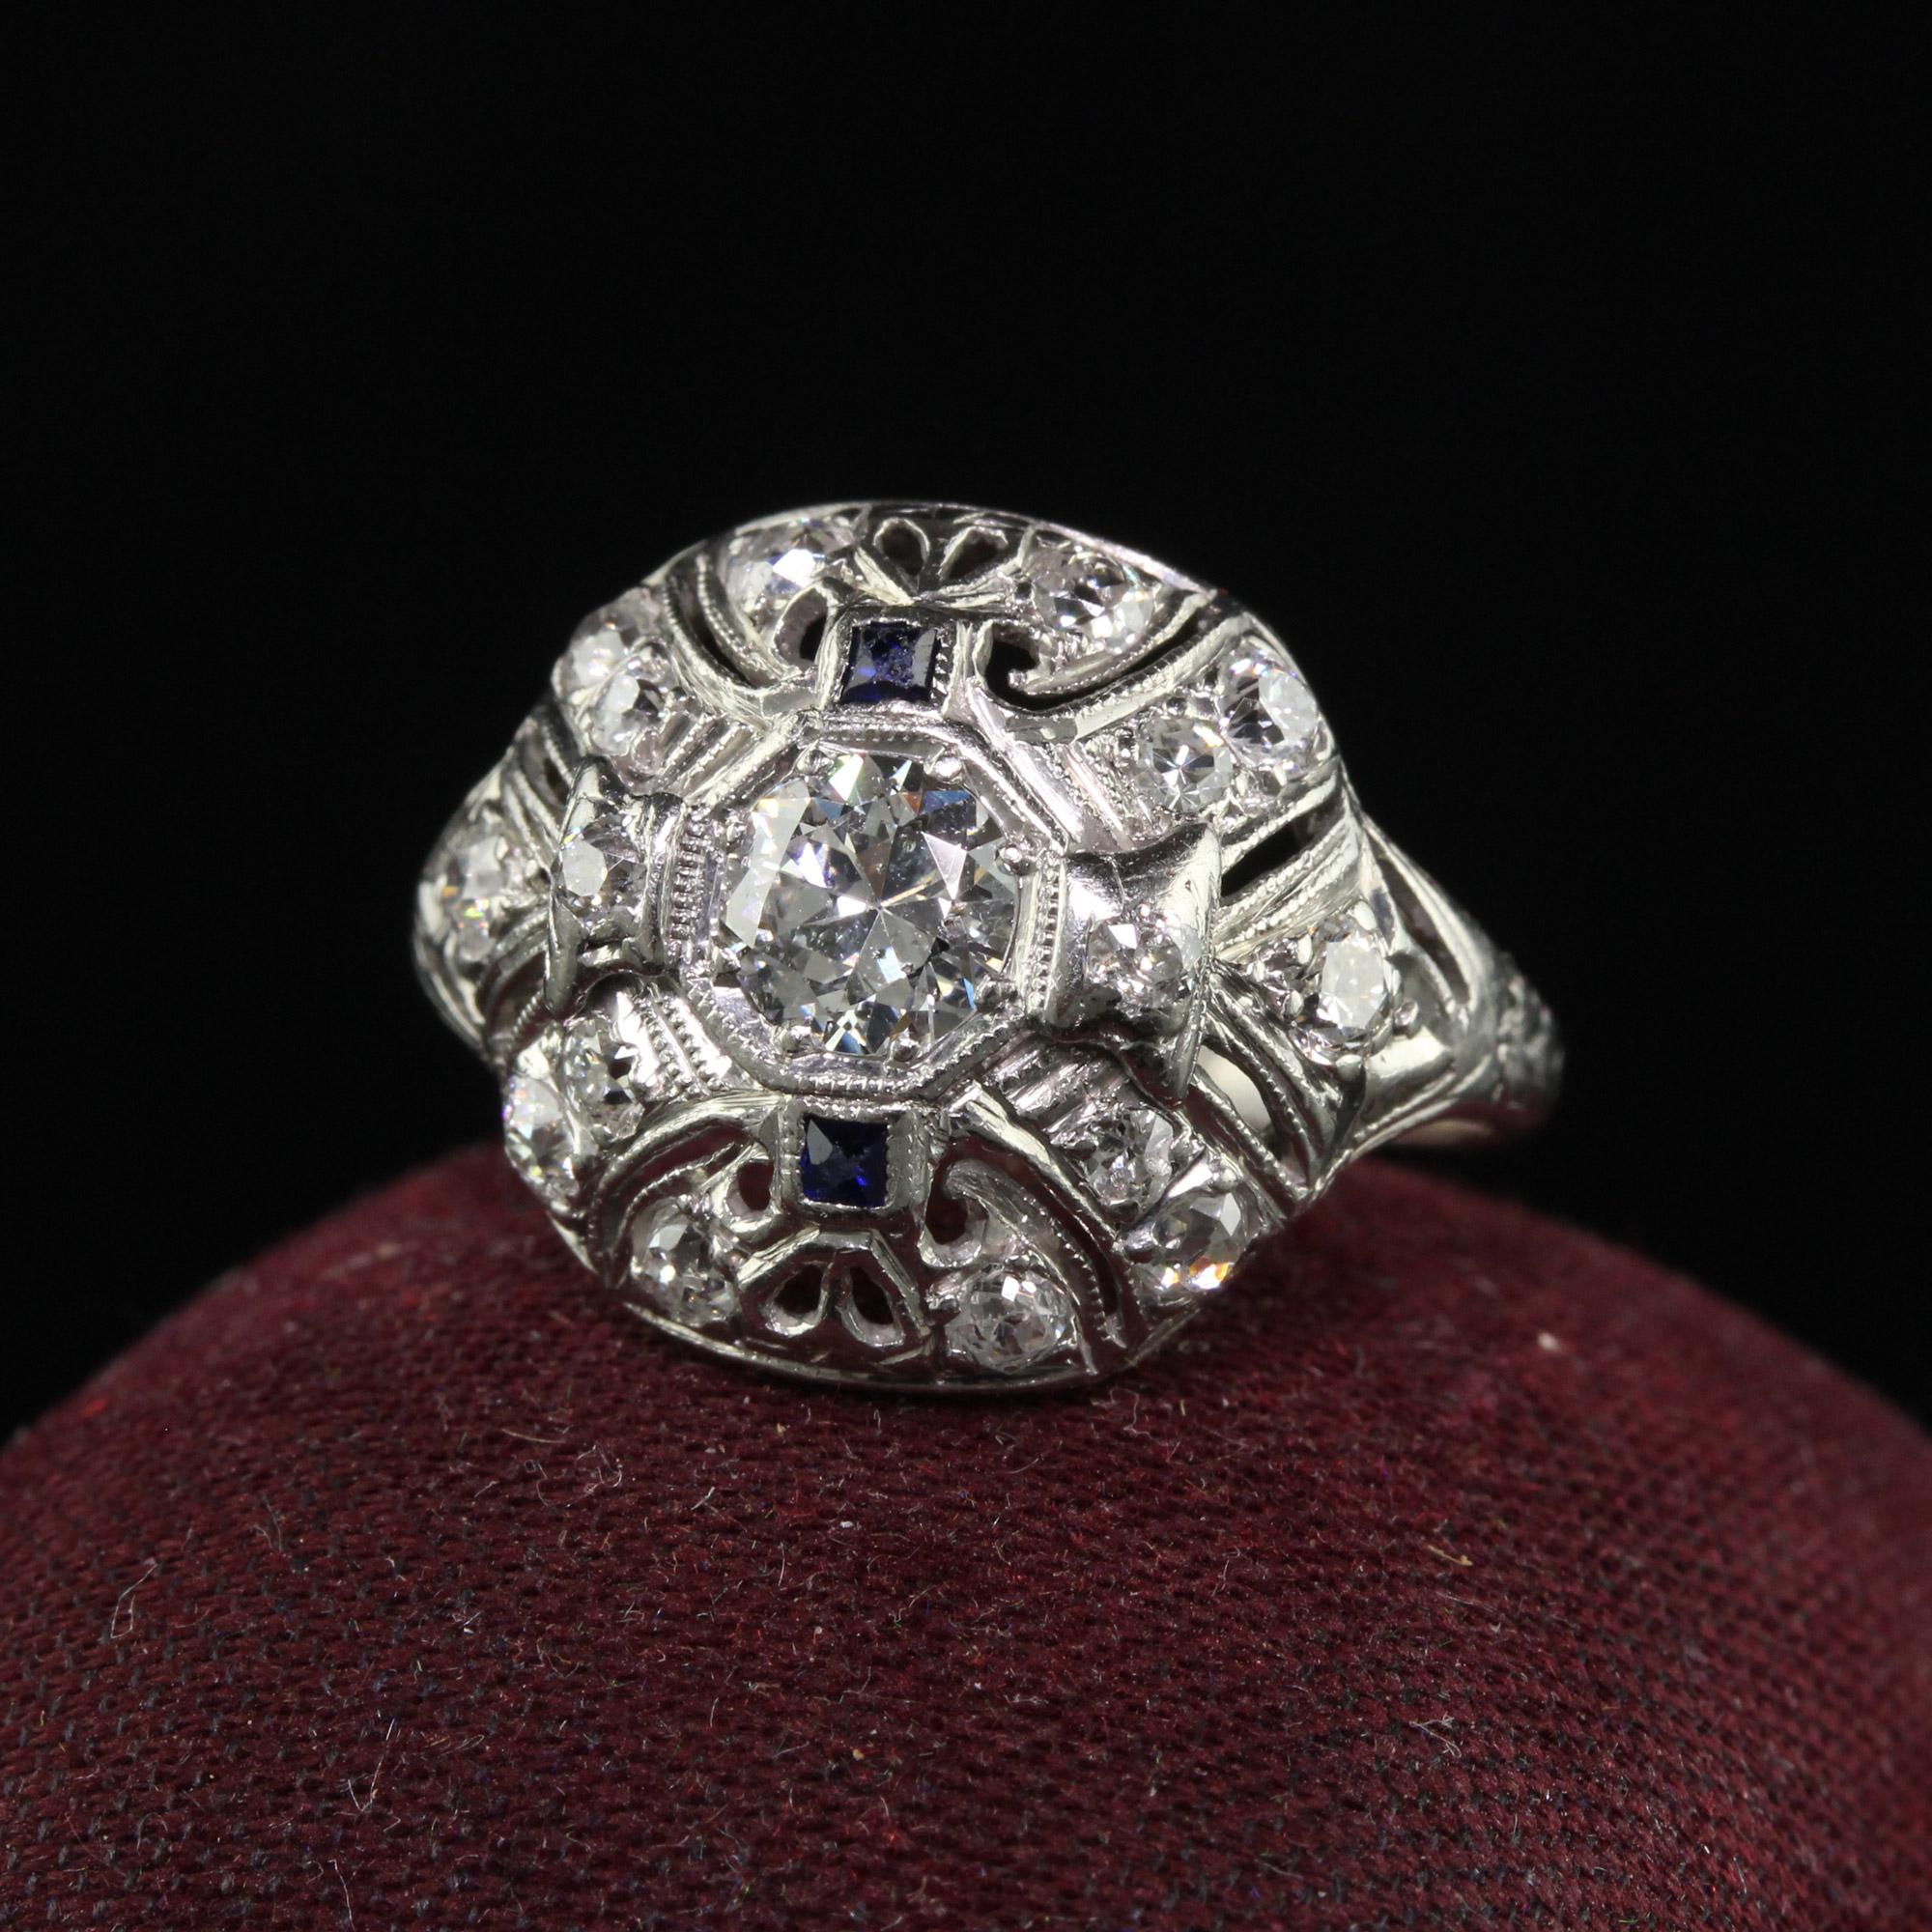 Schöne antike Art Deco Platinum Old European Cut Diamant und Saphir Cocktail-Ring. Dieser schöne Ring ist aus Platin gefertigt. Der Ring enthält Diamanten im alten europäischen Schliff, die in einer filigranen Fassung gefasst sind. Der Ring ist in